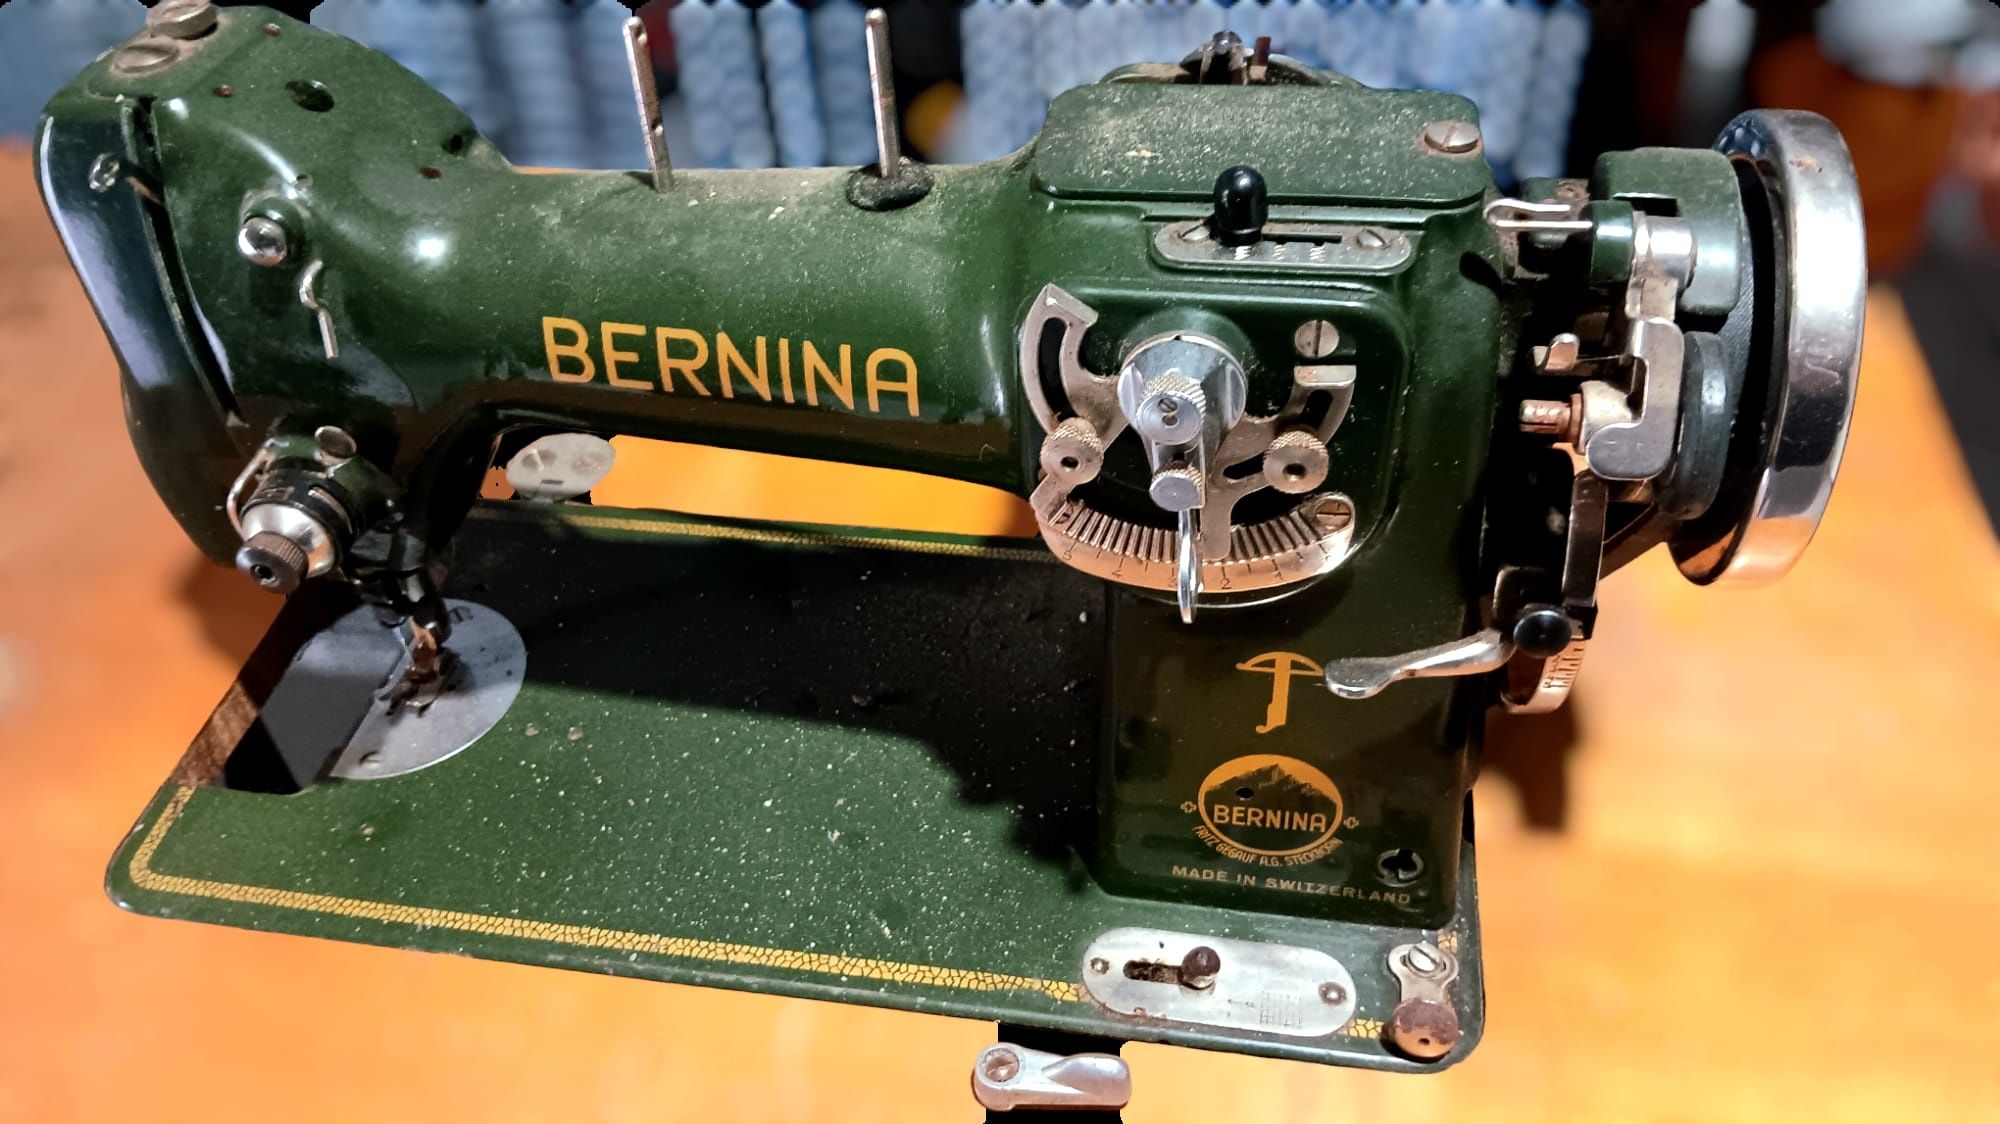 Máquina de costura Bernina